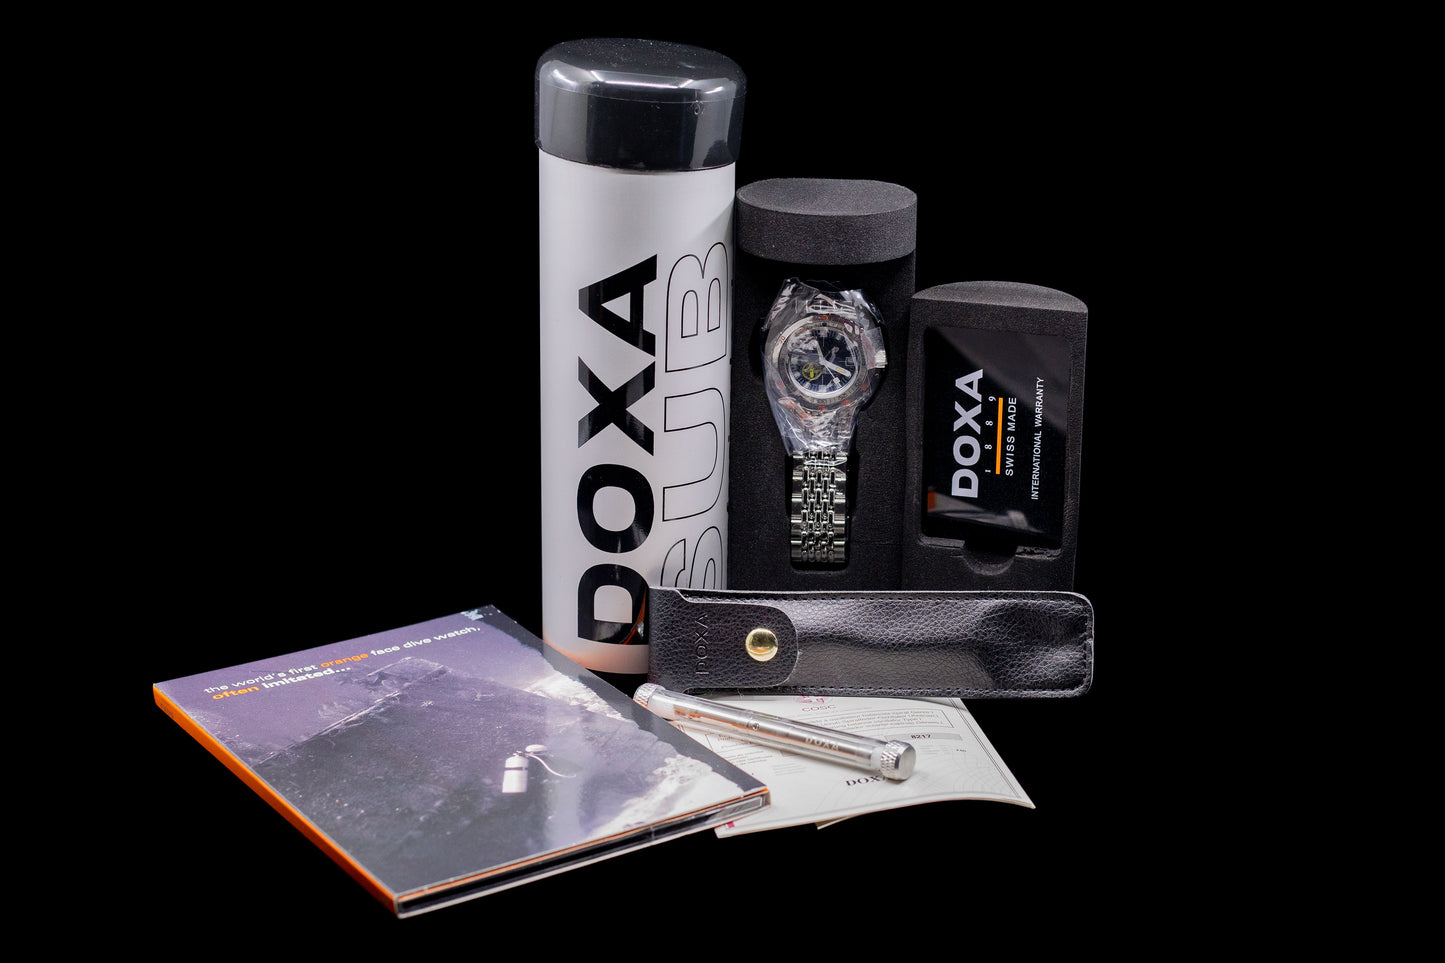 DOXA Sub 300 Sharkhunter 'Blacklung' Reissue